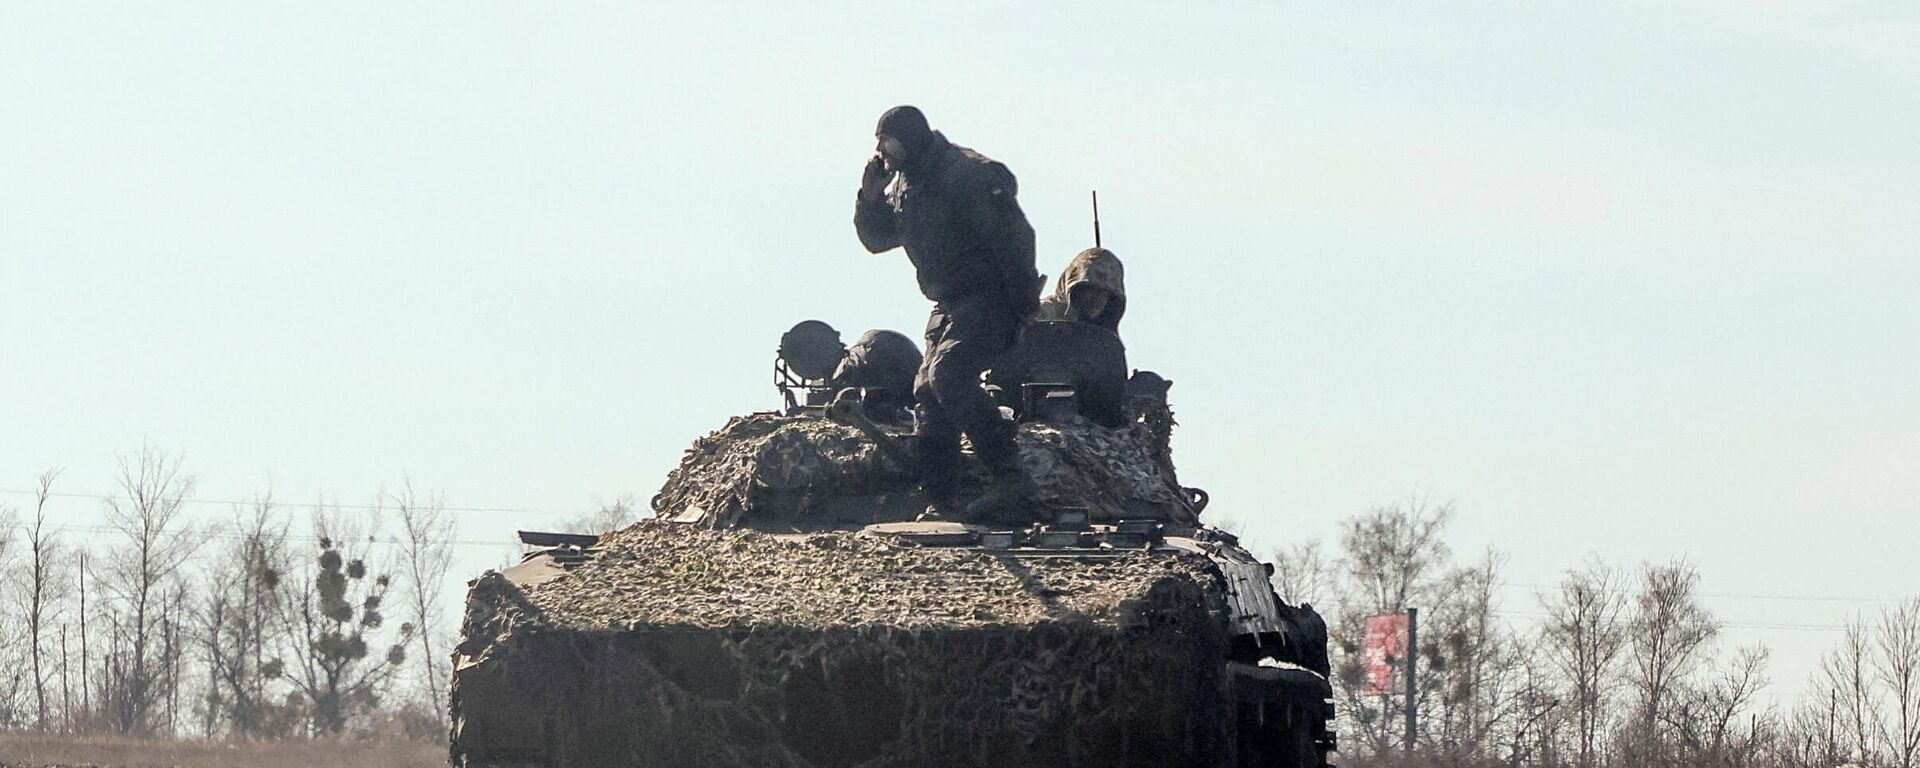 Soldados do Exército ucraniano são vistos em um veículo blindado, na região de Kharkov, na Ucrânia, em 24 de fevereiro de 2022 - Sputnik Brasil, 1920, 06.03.2022